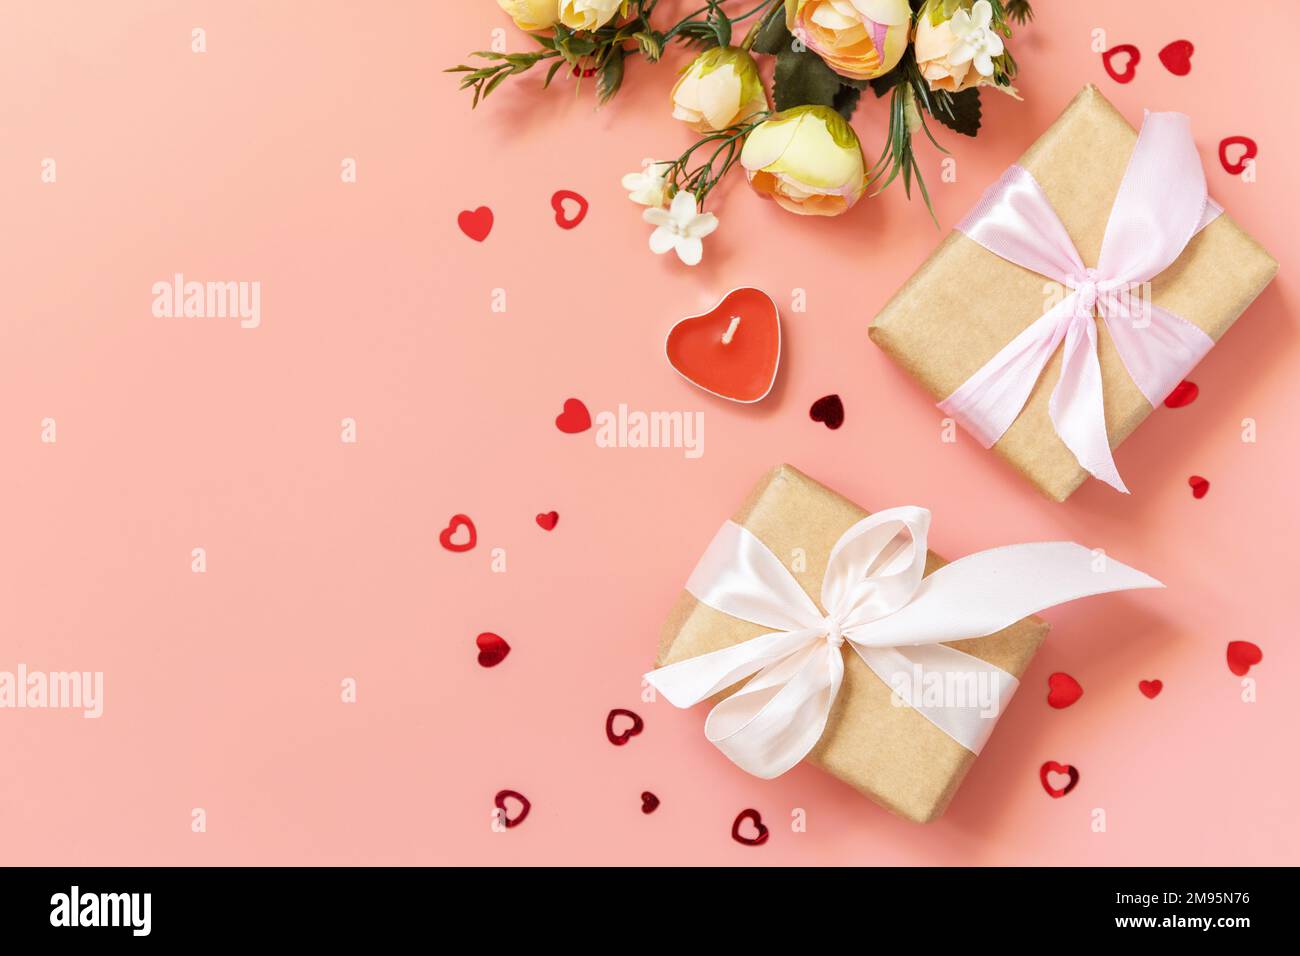 Valentinstag, Frauentag, Geburtstag, Muttertag Grußkarte Hintergrund mit handgemachter Geschenkbox und Frühlingsblume auf pinkfarbenem Hintergrund. Ansicht von Stockfoto